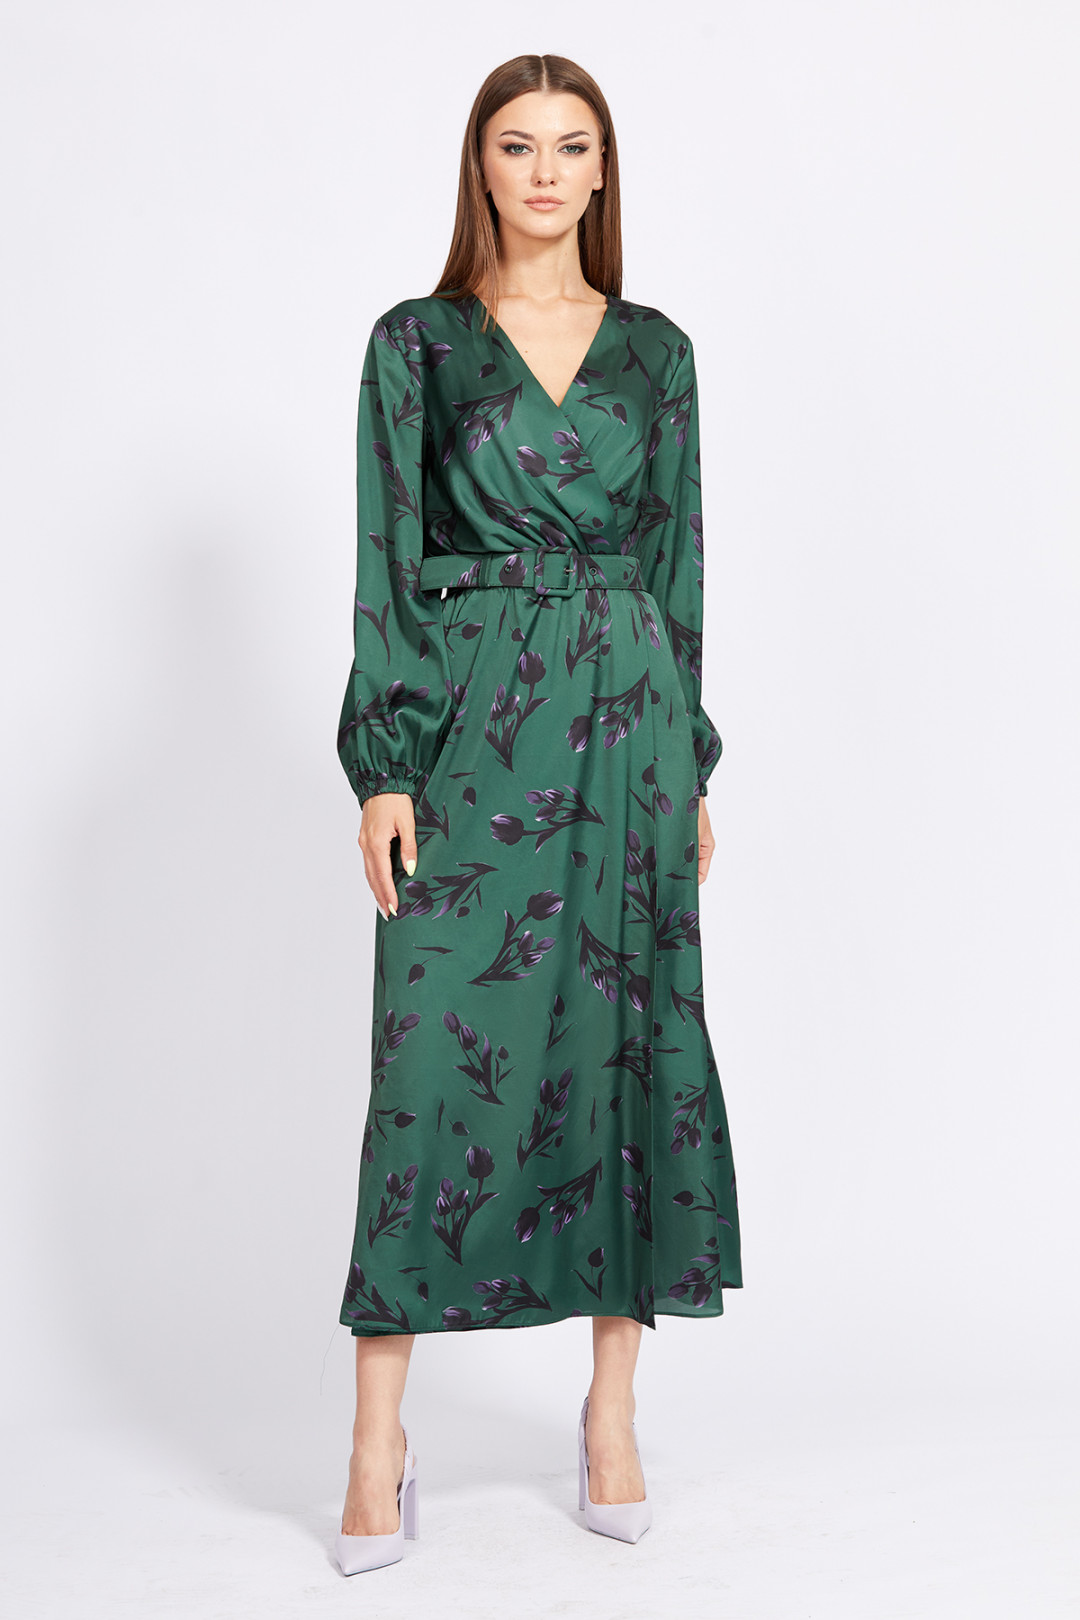 Платье Эола Стиль 2268 зеленый в цветы